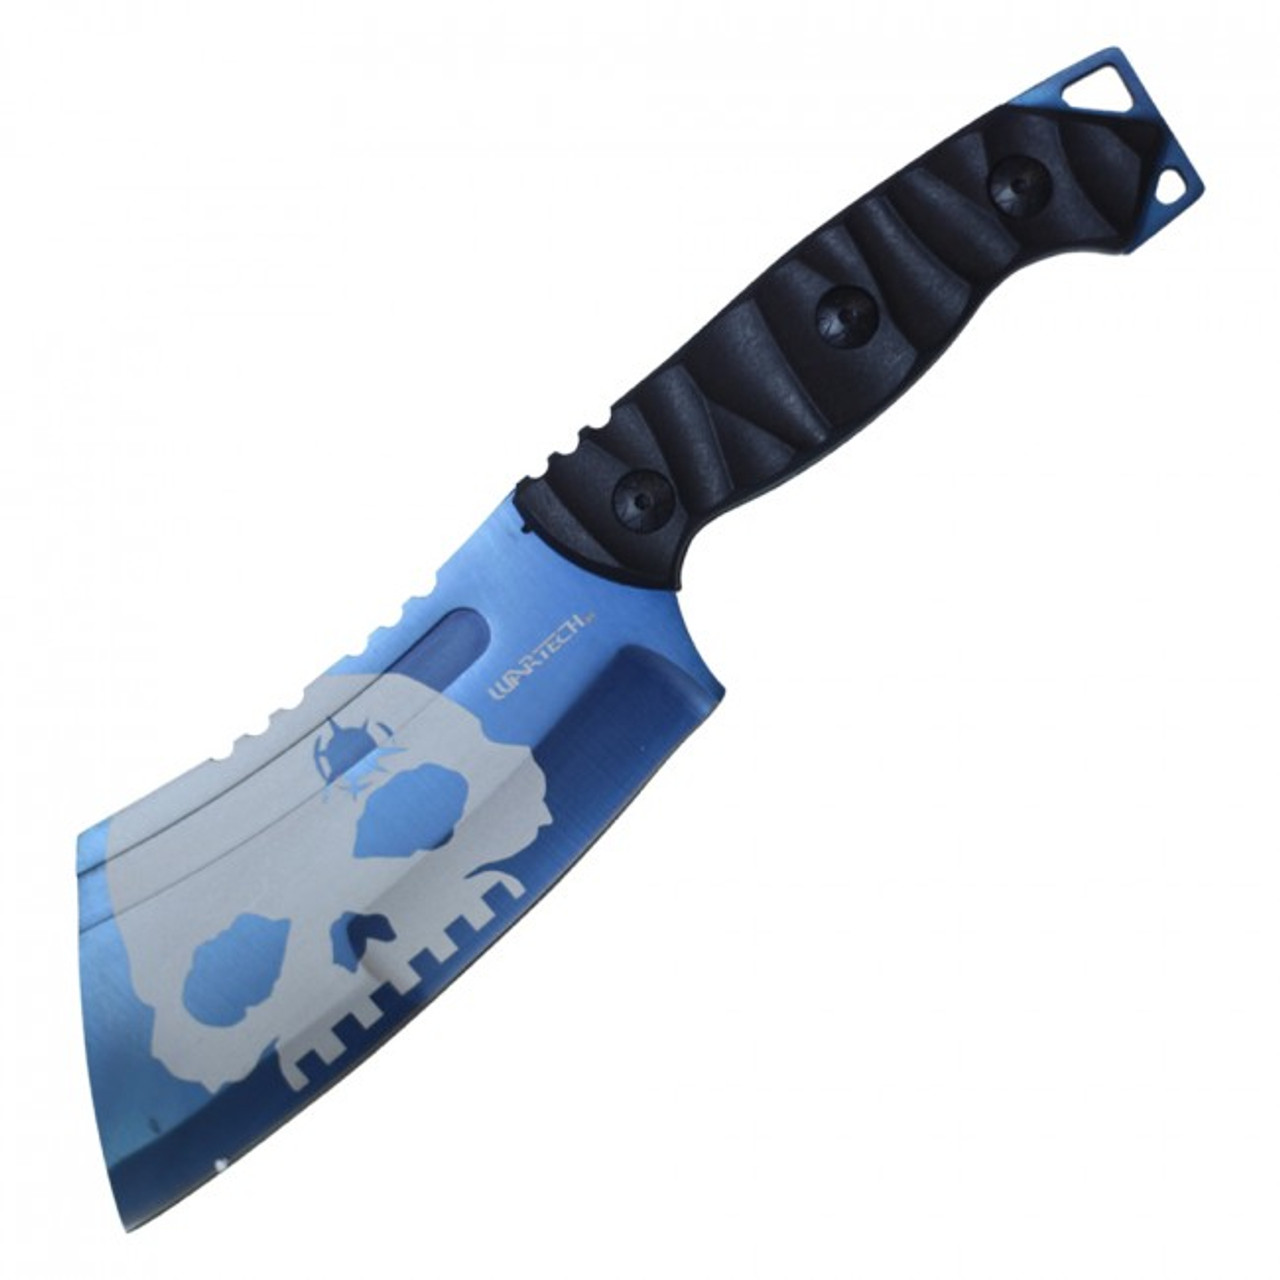 9.5" Fixed Blade Cleaver Knife w/ Sheath - Blue